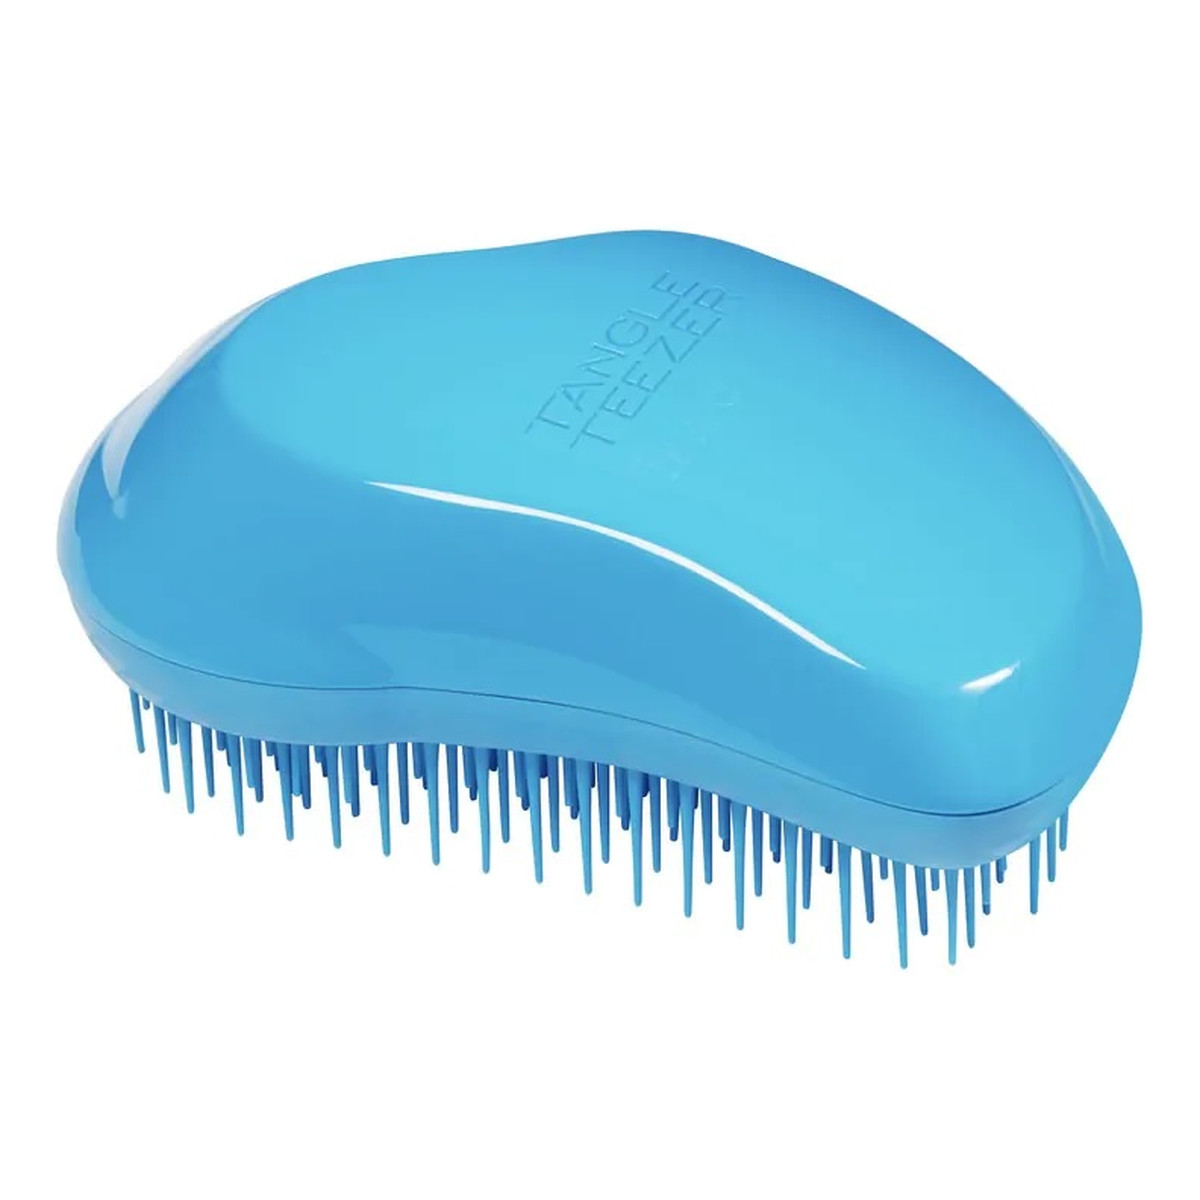 Tangle Teezer Thick & curly detangling hairbrush szczotka do włosów gęstych i kręconych azure blue